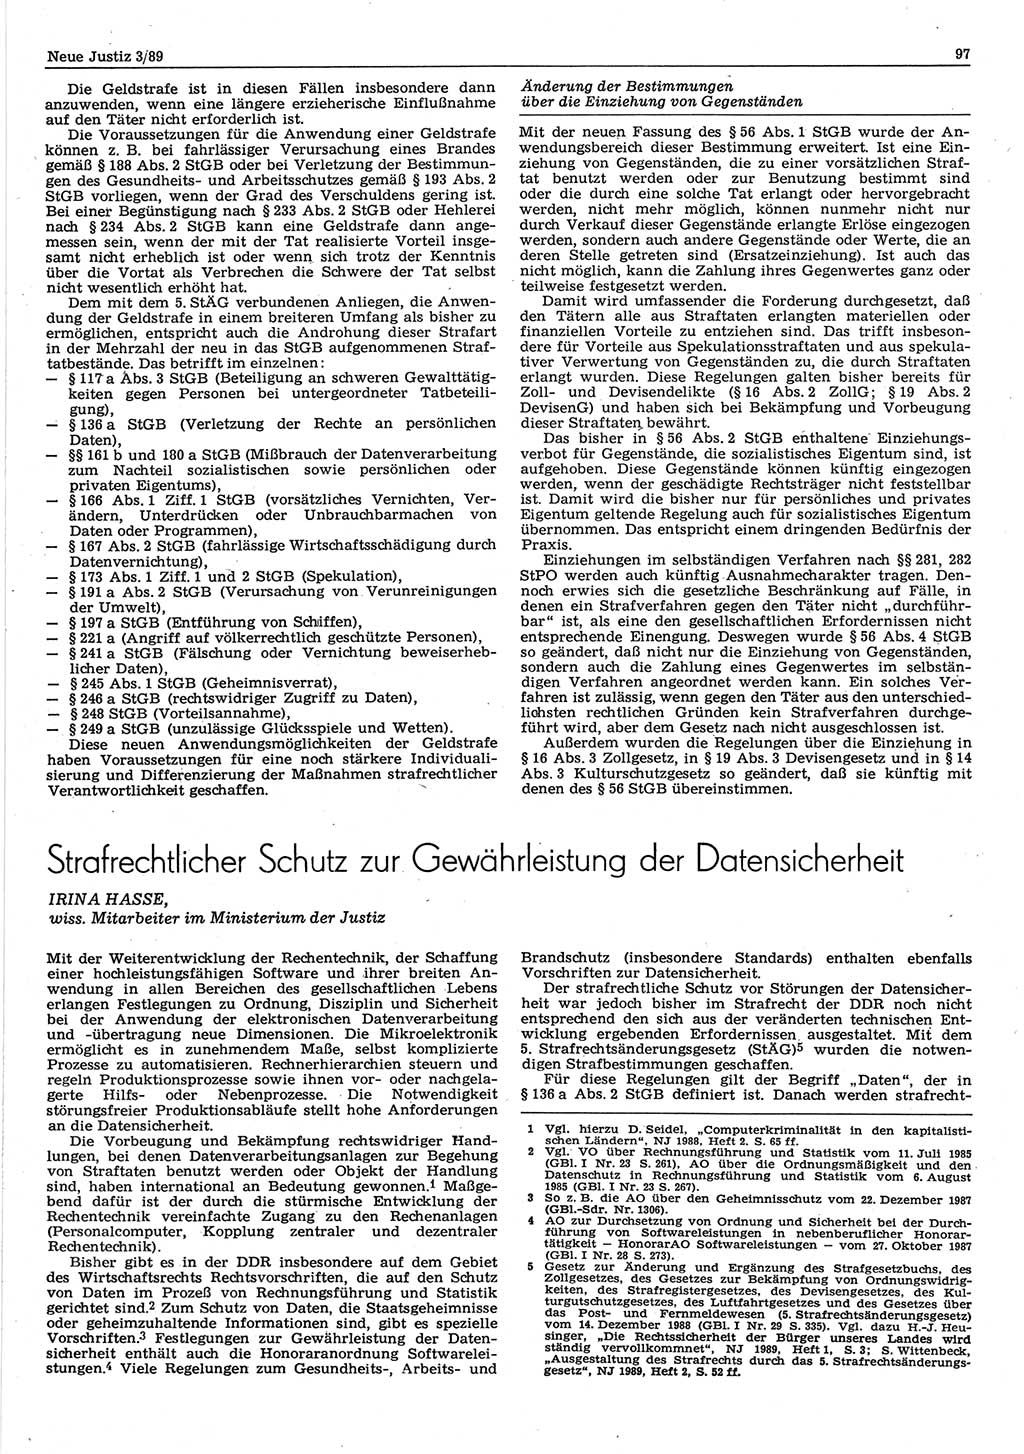 Neue Justiz (NJ), Zeitschrift für sozialistisches Recht und Gesetzlichkeit [Deutsche Demokratische Republik (DDR)], 43. Jahrgang 1989, Seite 97 (NJ DDR 1989, S. 97)